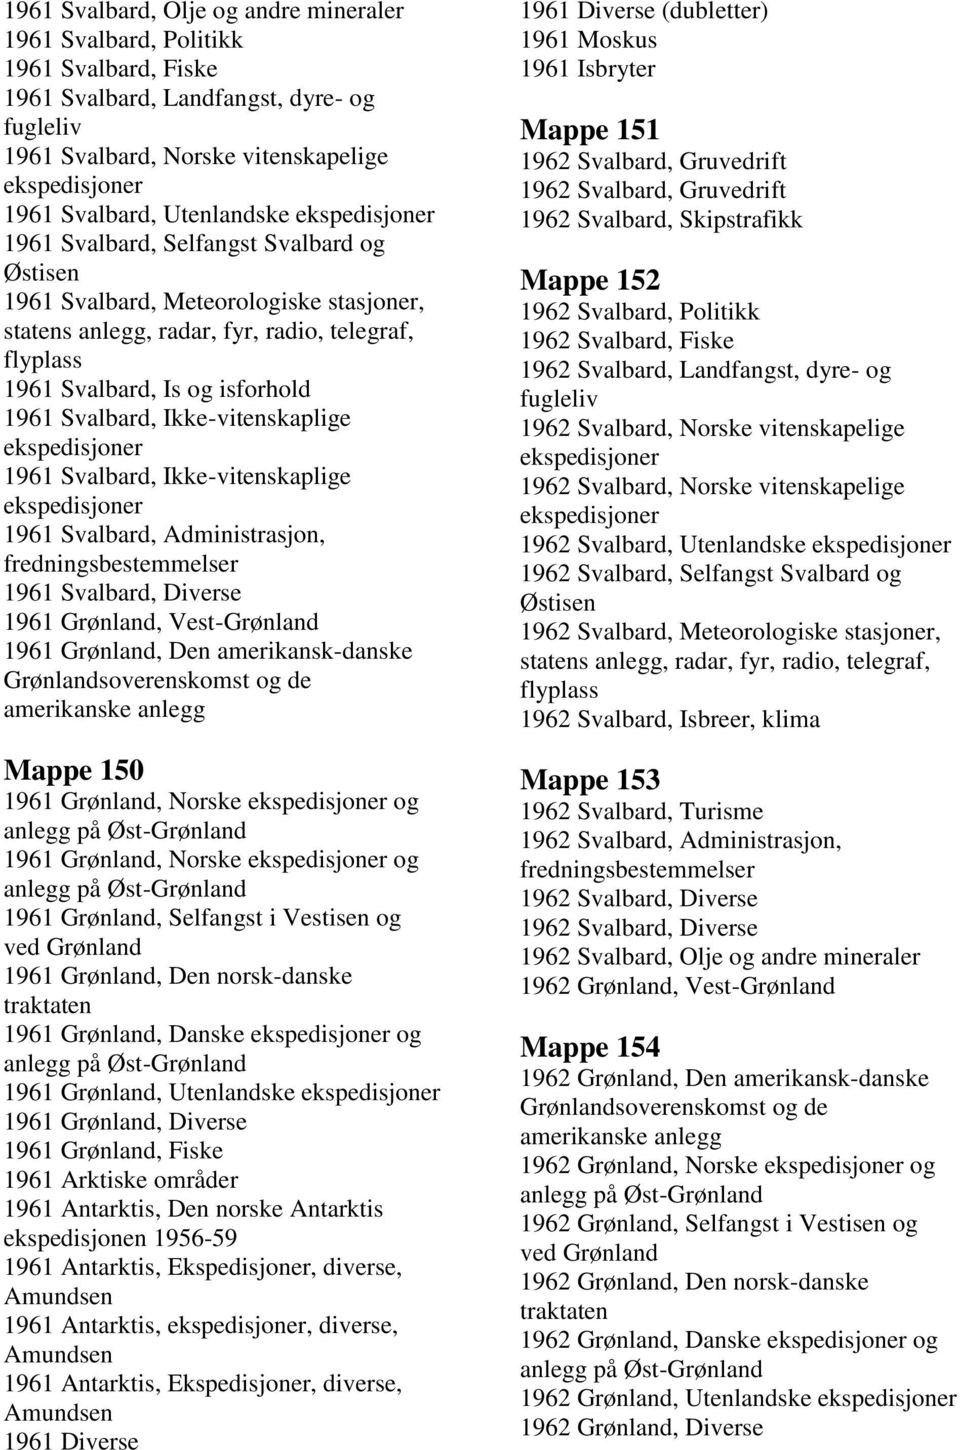 Svalbard, Diverse 1961 Grønland, Vest-Grønland 1961 Grønland, Den amerikansk-danske Mappe 150 1961 Grønland, Norske og 1961 Grønland, Norske og 1961 Grønland, Selfangst i Vestisen og 1961 Grønland,